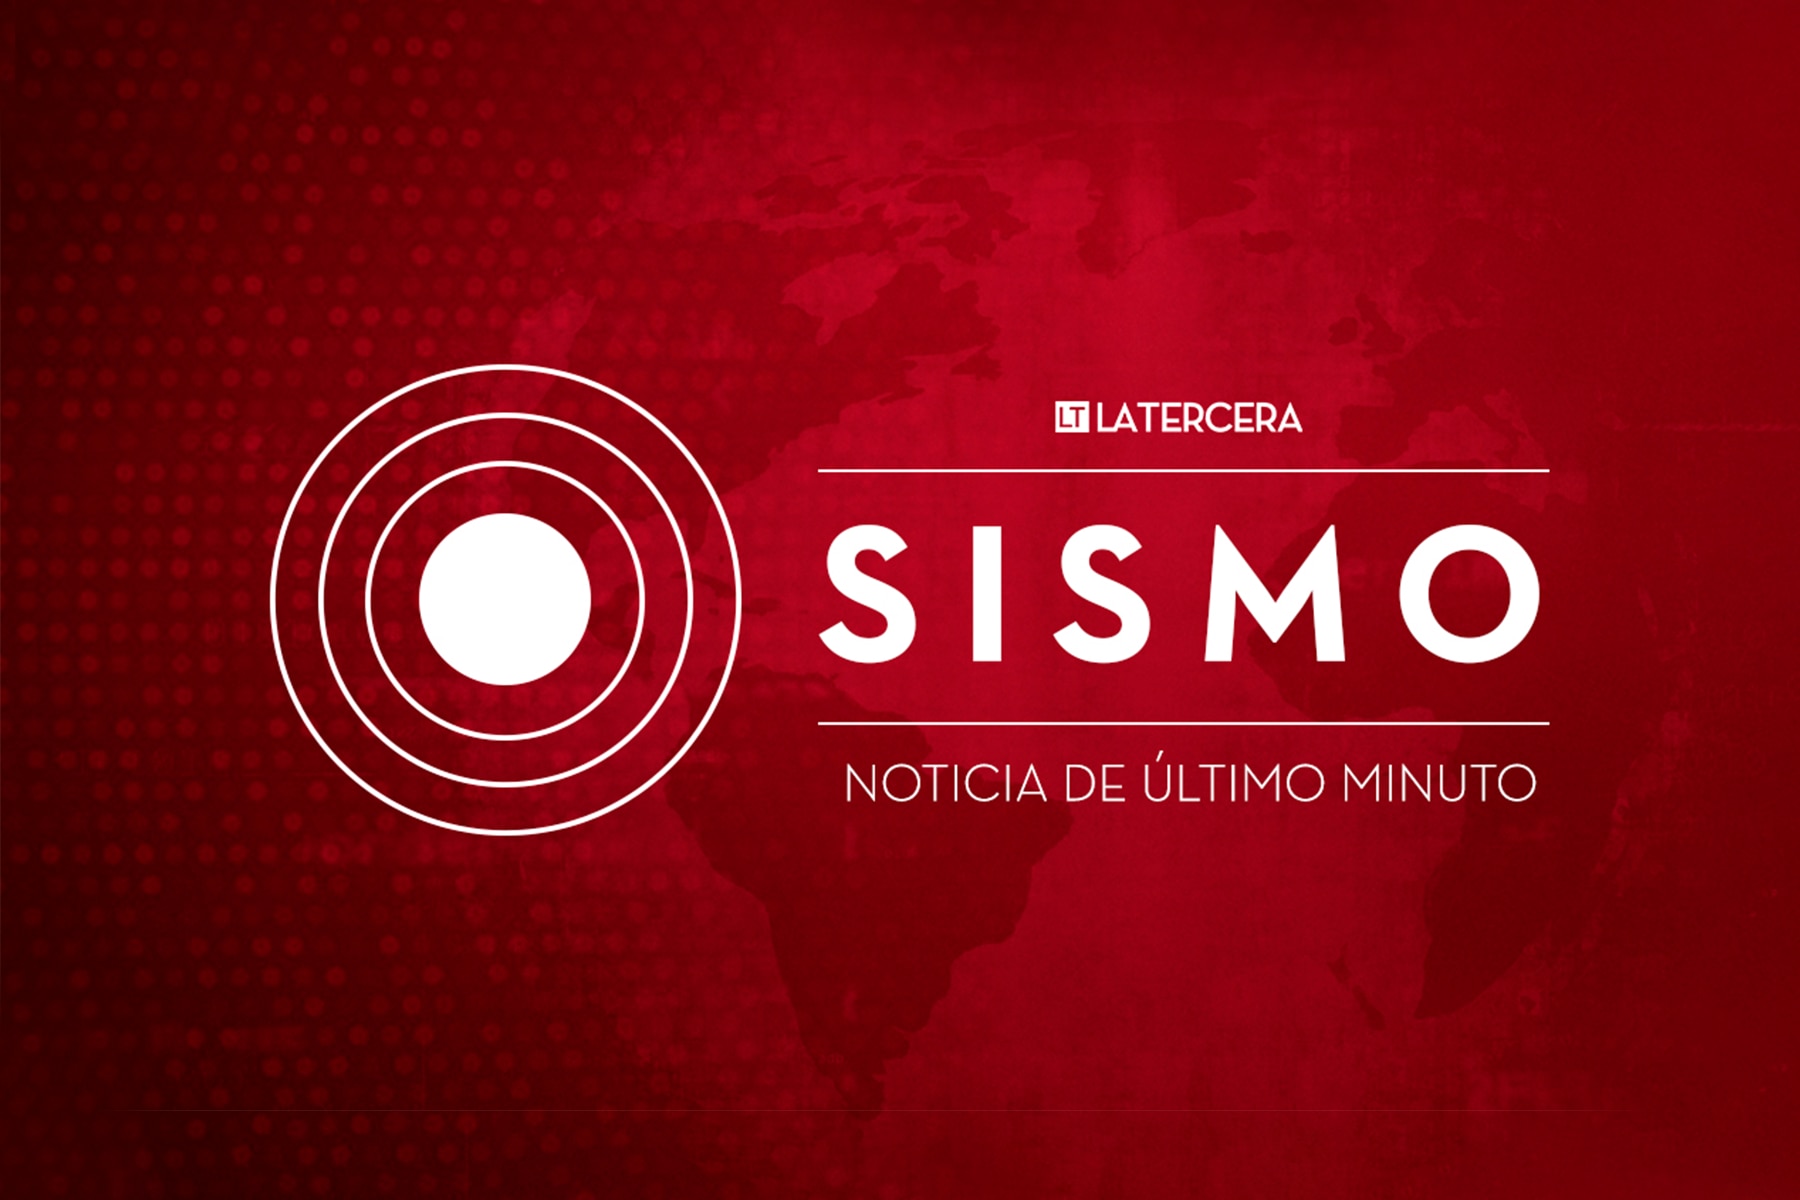 temblor hoy, lunes 15 de enero en chile: consulta epicentro y magnitud